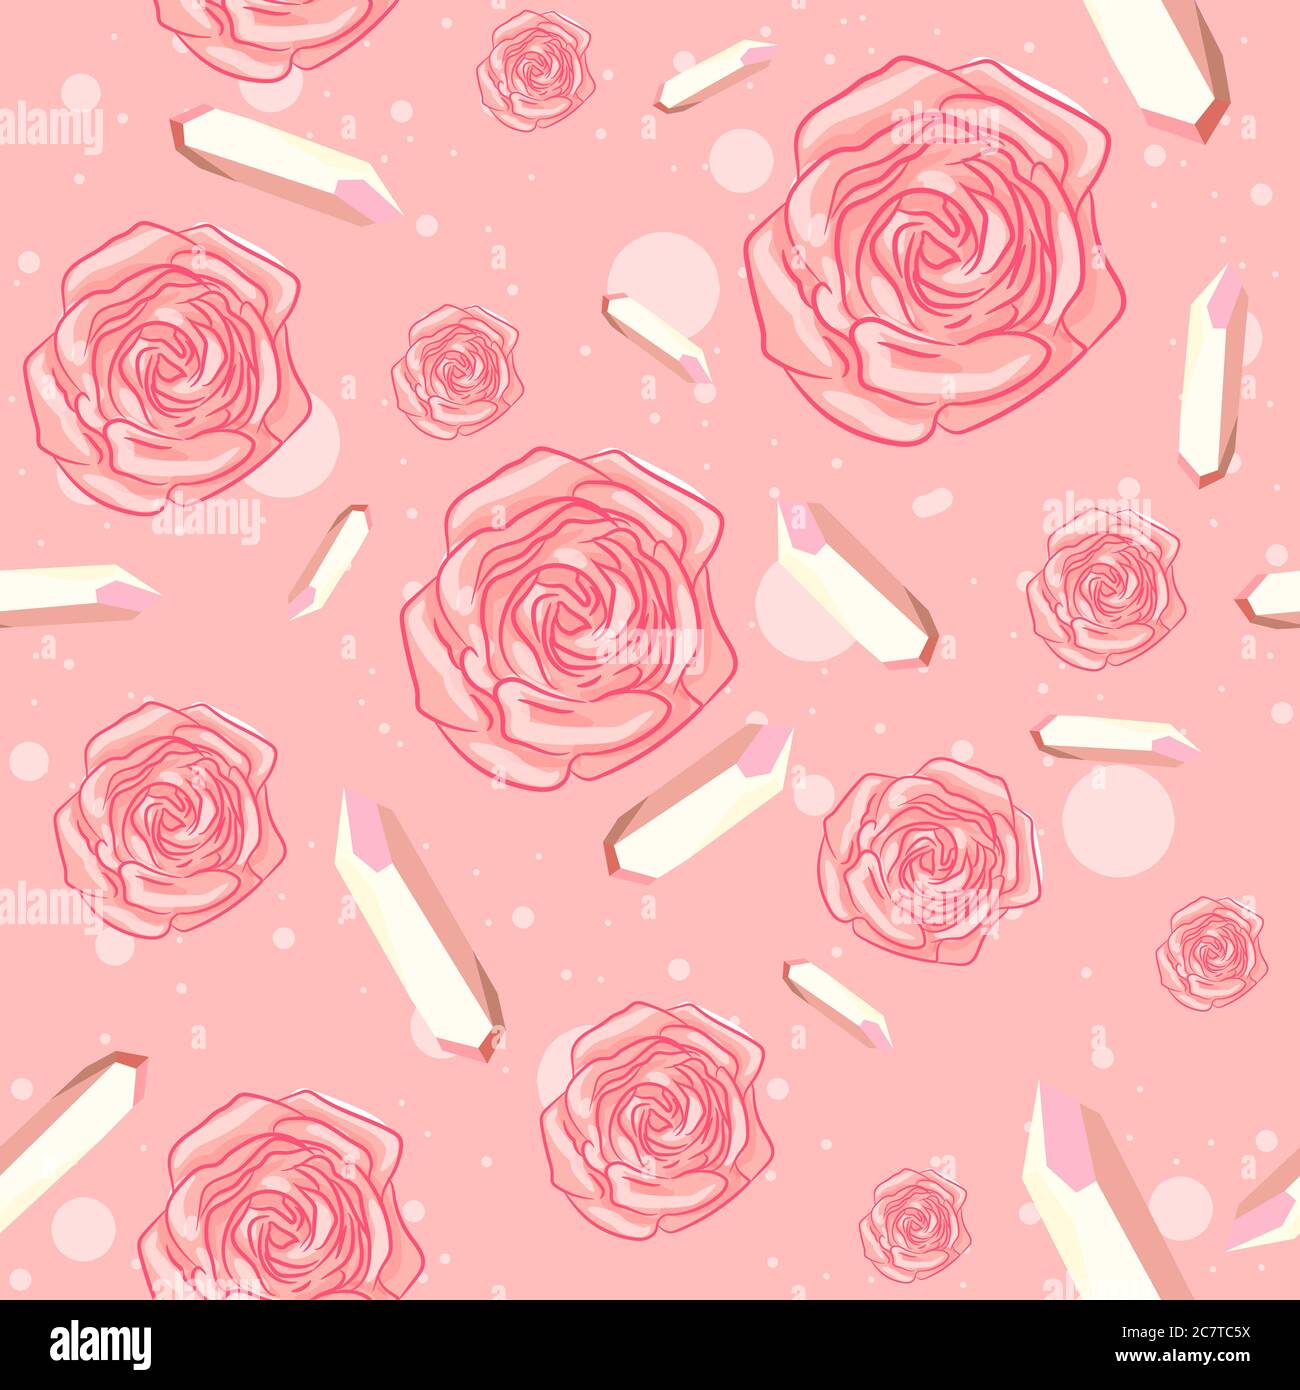 Rosen und Edelsteine Nahtloses Muster auf rosa Hintergrund. Blumen und kostbare Quarz repetitive Objekte. Stock Vektor